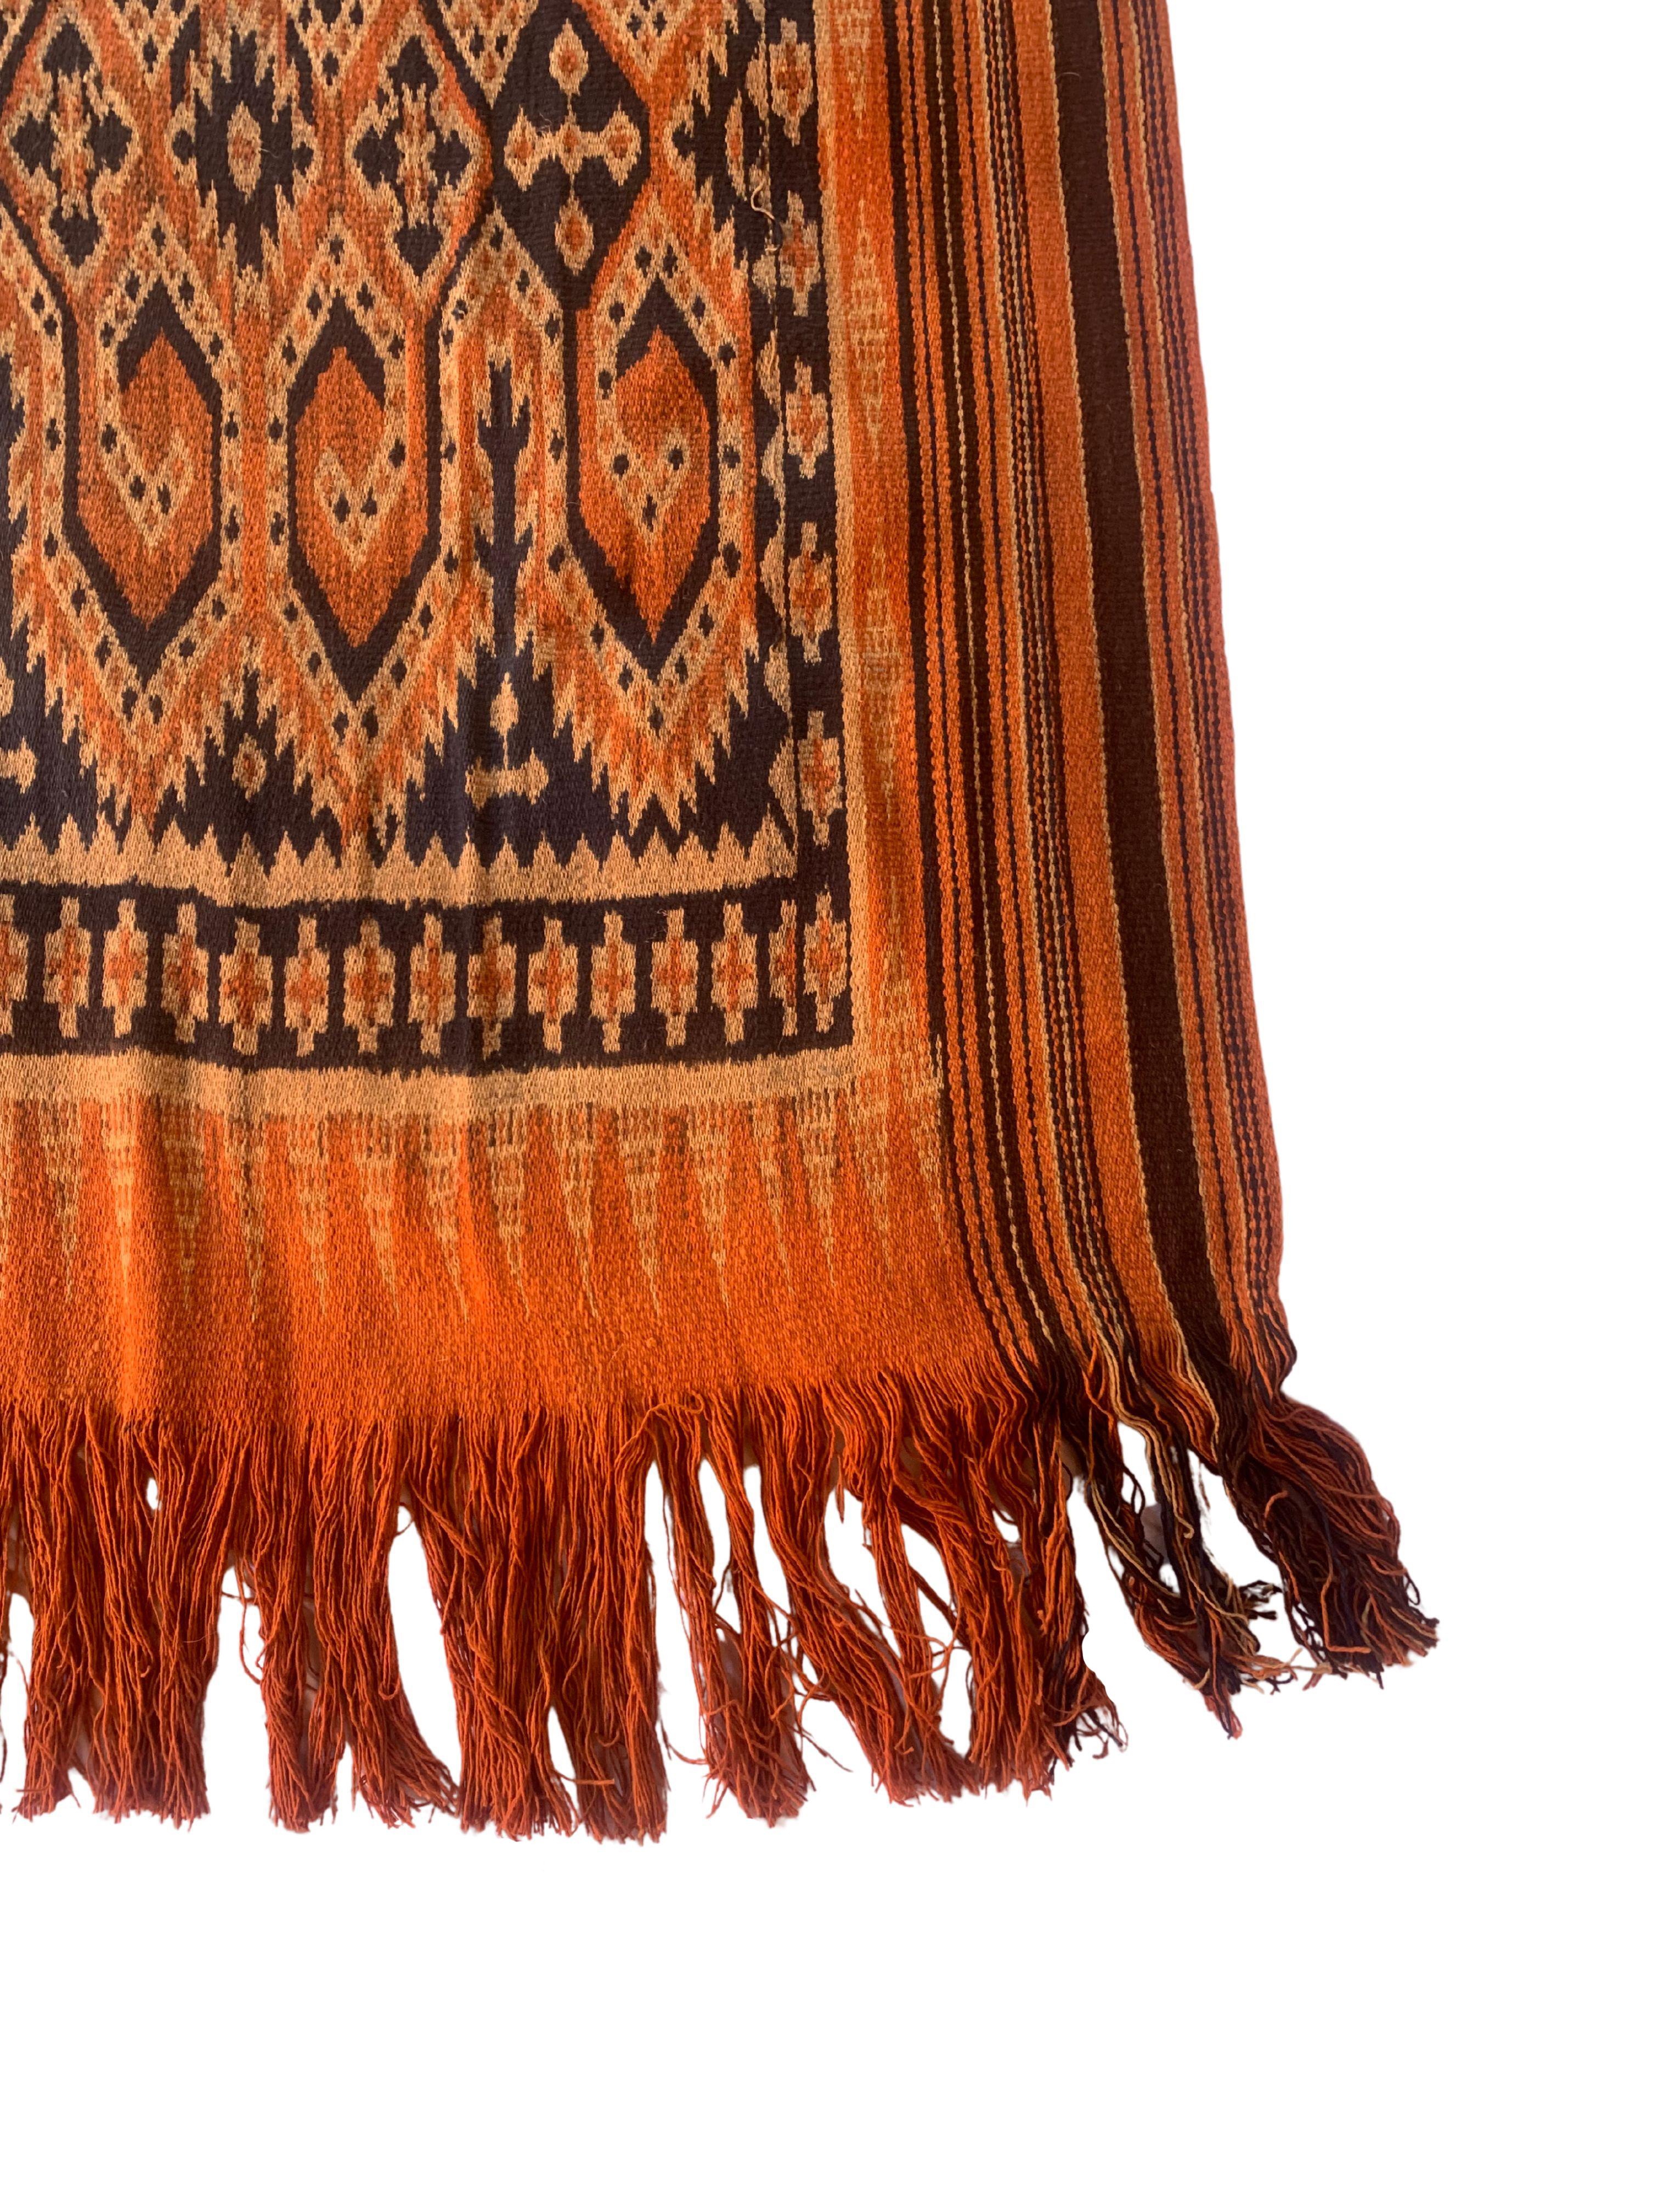 Ein sehr großes Irate-Textil von den Toraja-Stämmen in Sulawesi, Indonesien. Die Toraja sind eine ethnische und kulturelle Gruppe von Menschen, die das gebirgige Hochland von Südsulawesi, Indonesien, bewohnen. Berühmt für ihre einzigartige